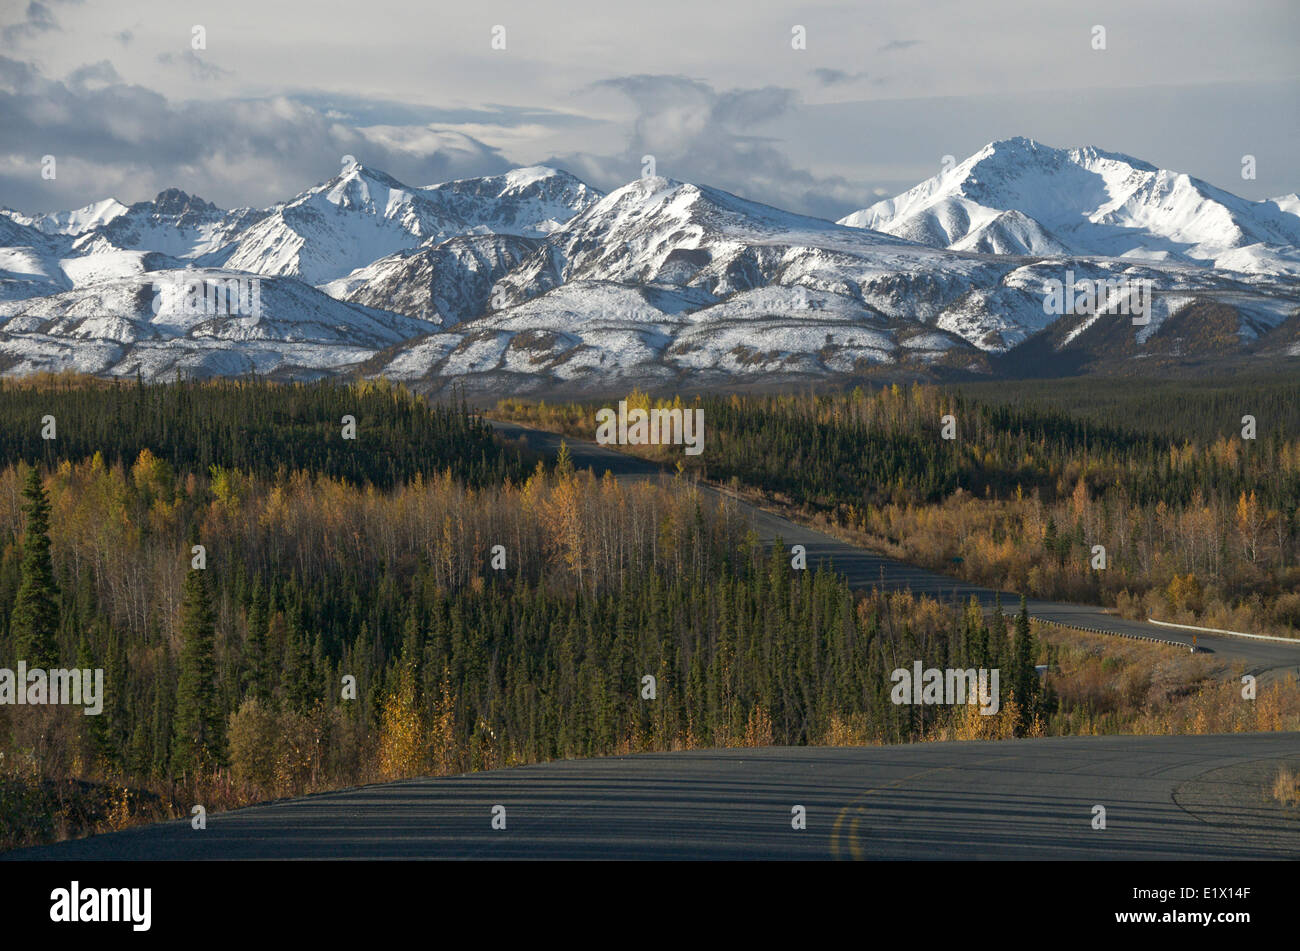 Gamme St-elias, près de White River, sur la route de l'Alaska, Territoire du Yukon, Canada. Septembre. Banque D'Images